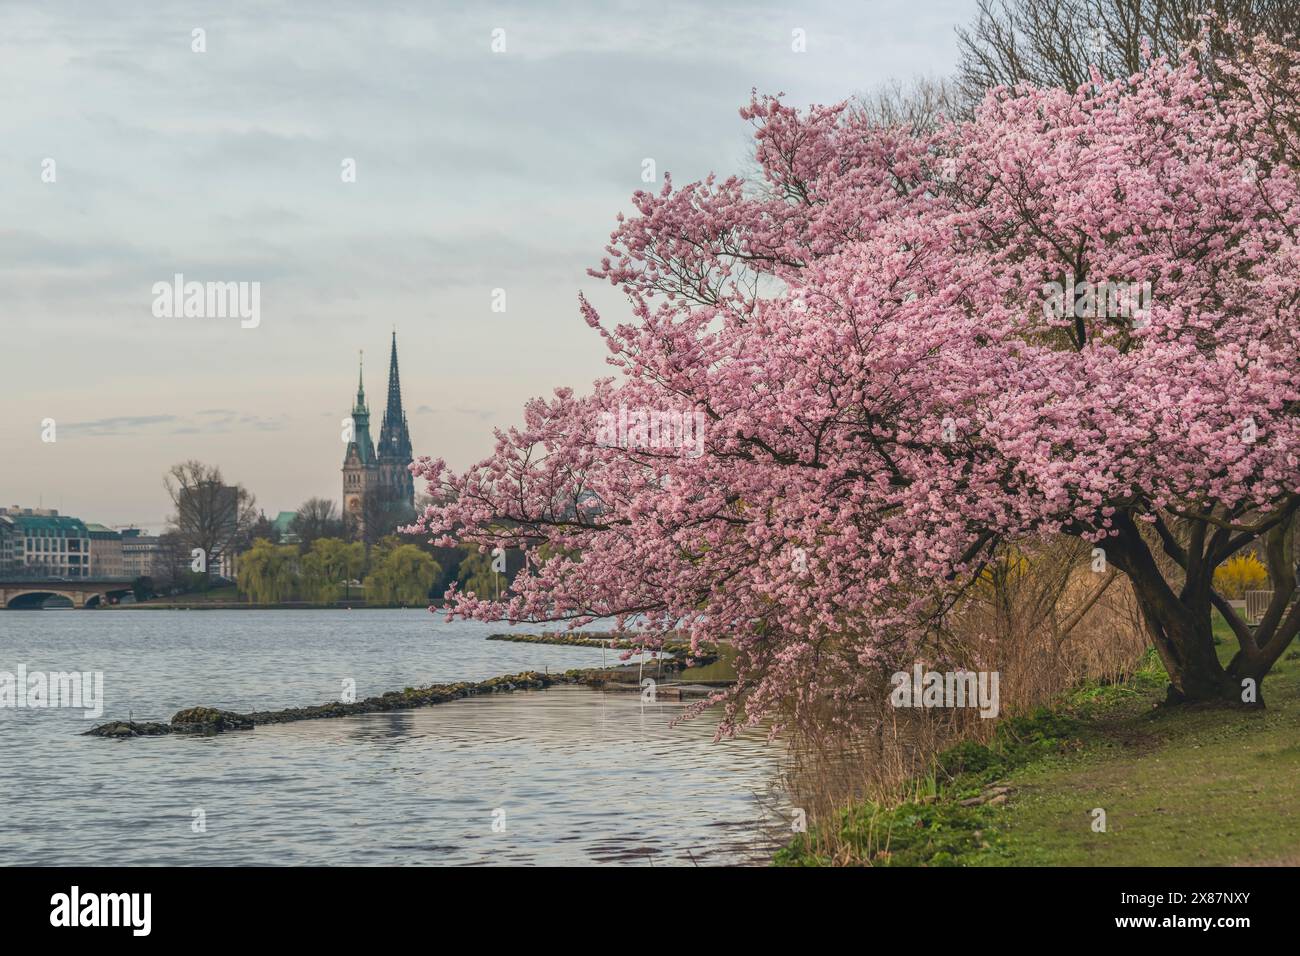 Allemagne, Hambourg, cerisier fleurissant sur la rive du lac Alster Banque D'Images